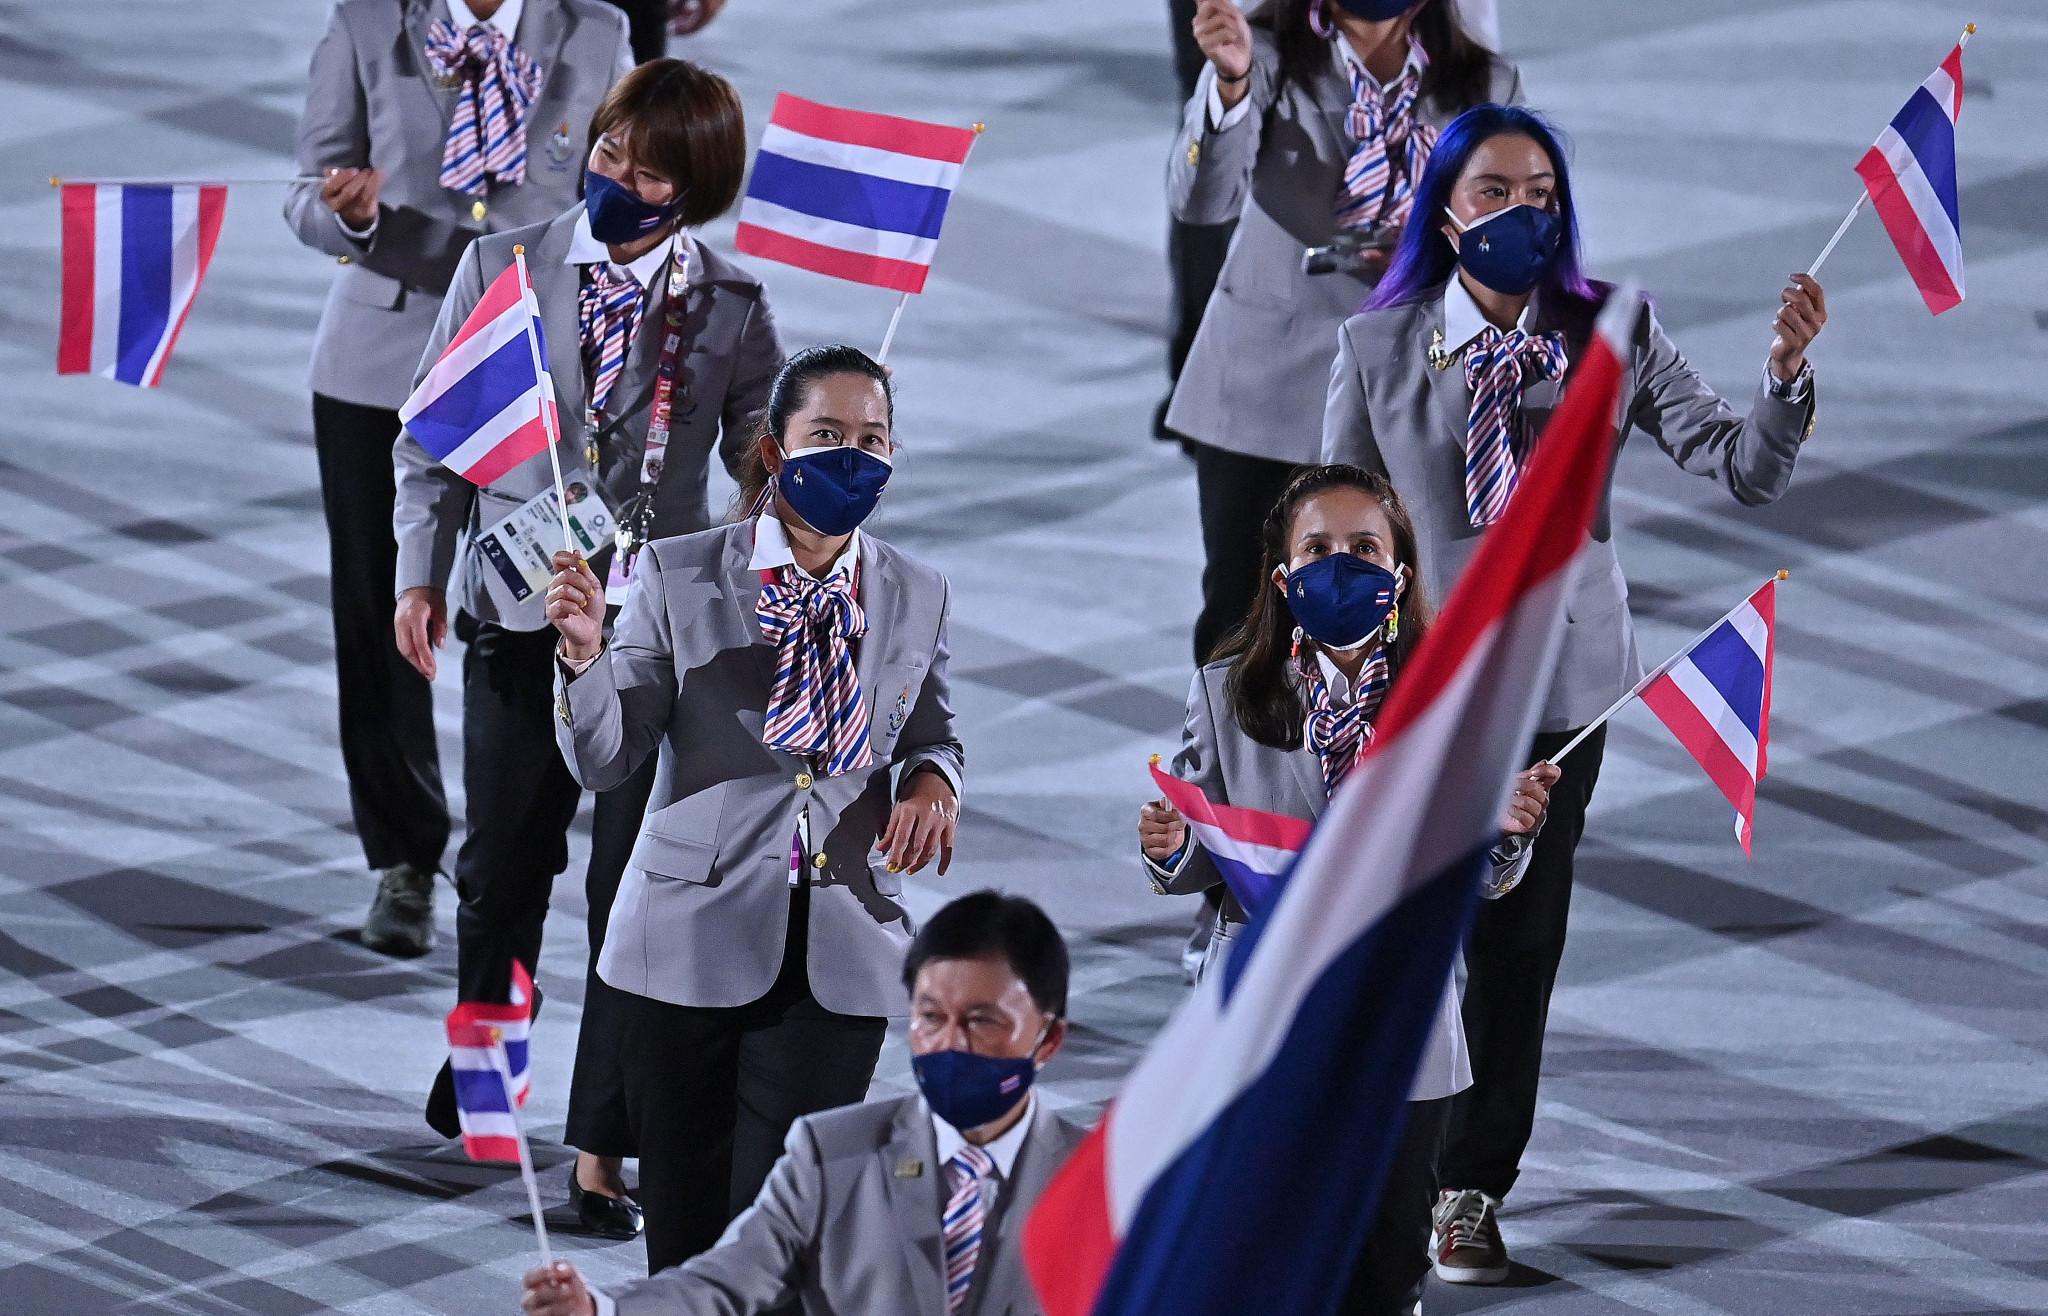 Màu cờ Thái Lan: Màu cờ Thái Lan là một trong những biểu tượng đặc trưng của đất nước này. Màu xanh lam tươi sáng tượng trưng cho sự bình yên và sự hy vọng, trong khi màu trắng biểu thị cho lòng trung thực và tinh thần đoàn kết. Cùng khám phá hình ảnh màu cờ Thái Lan để cảm nhận sức mạnh của màu sắc này.